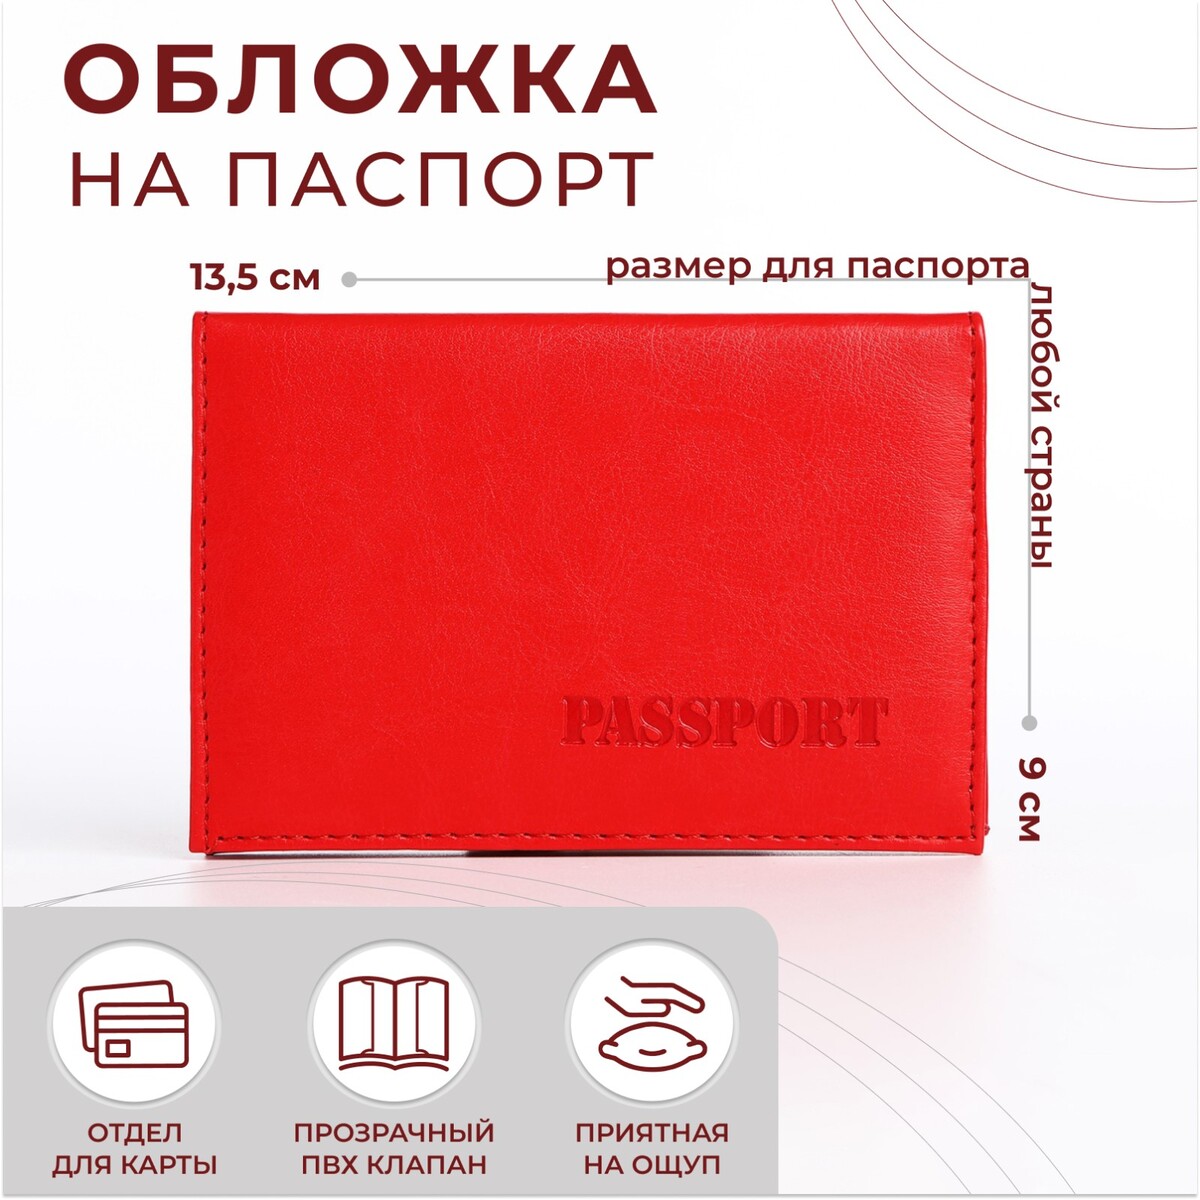 Обложка для паспорта, цвет алый алый камень